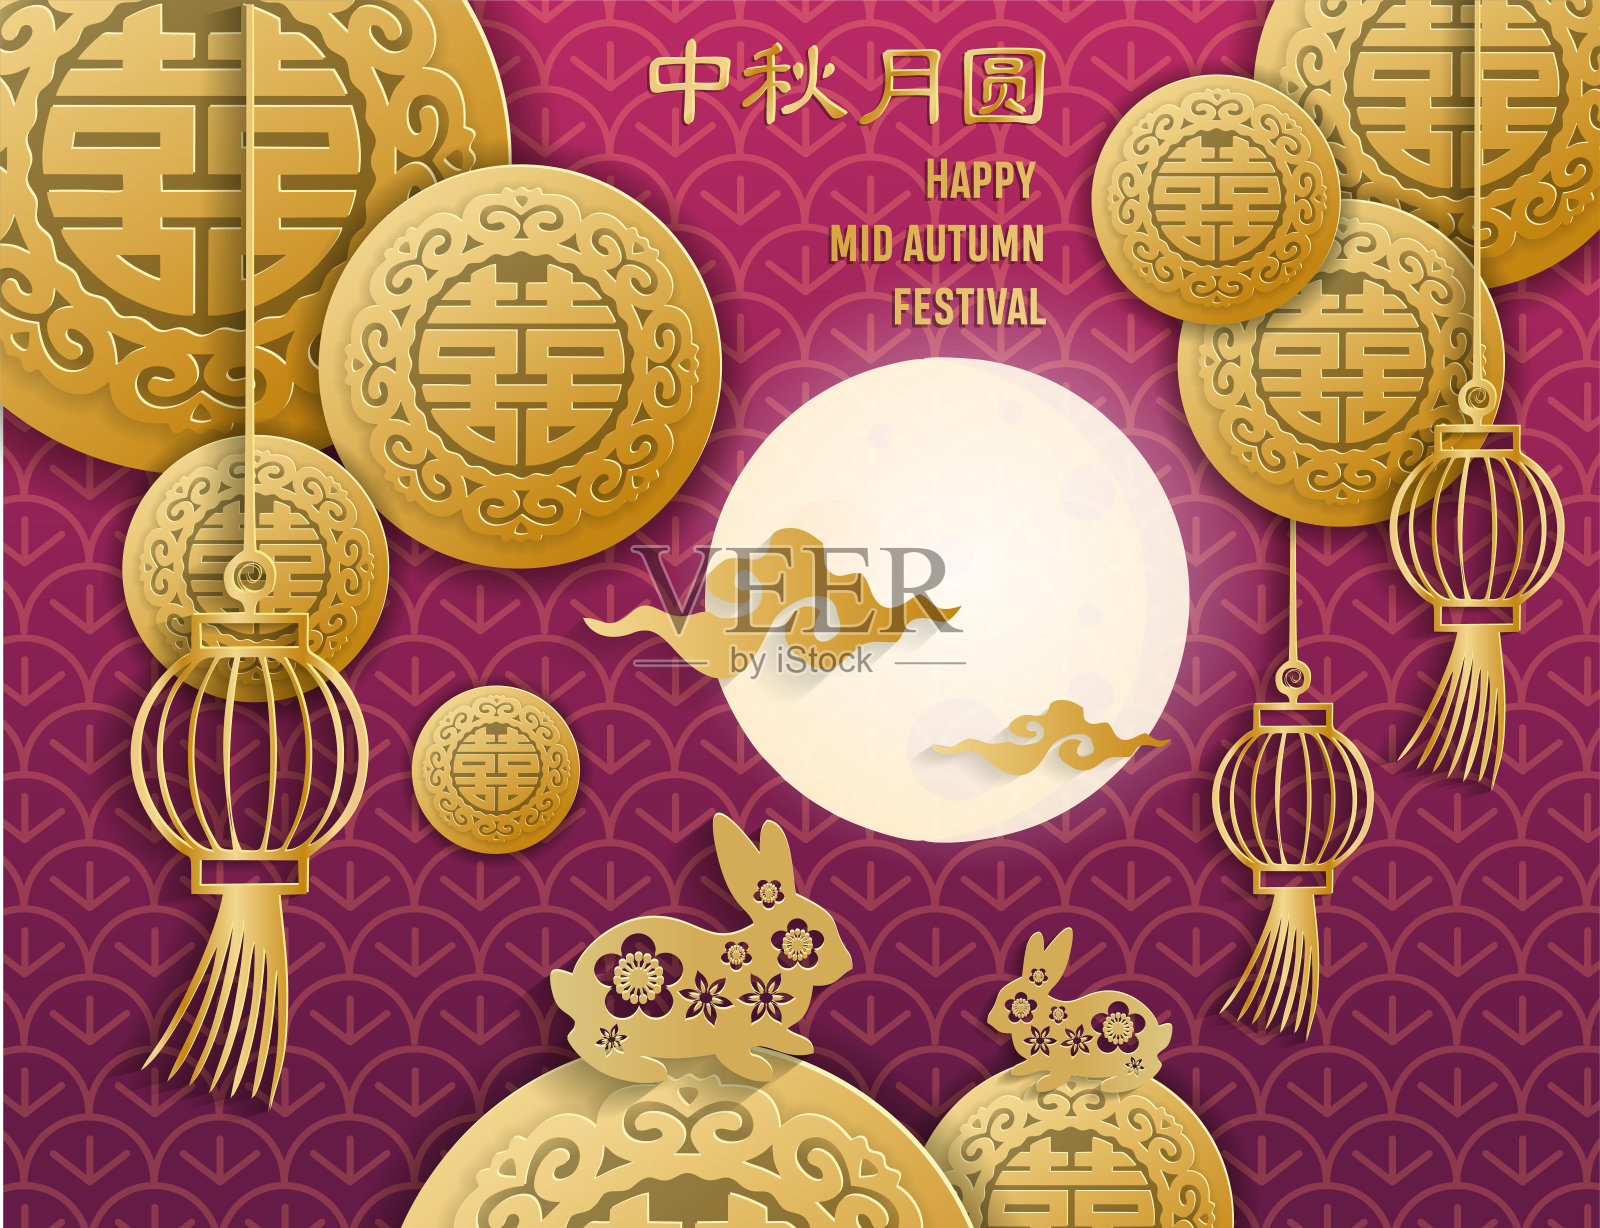 矢量中秋用剪纸艺术工艺风格上的深紫色背景用金色中国双喜象征，月亮，云彩，两只兔子在花图案。中国的象形文字设计模板素材